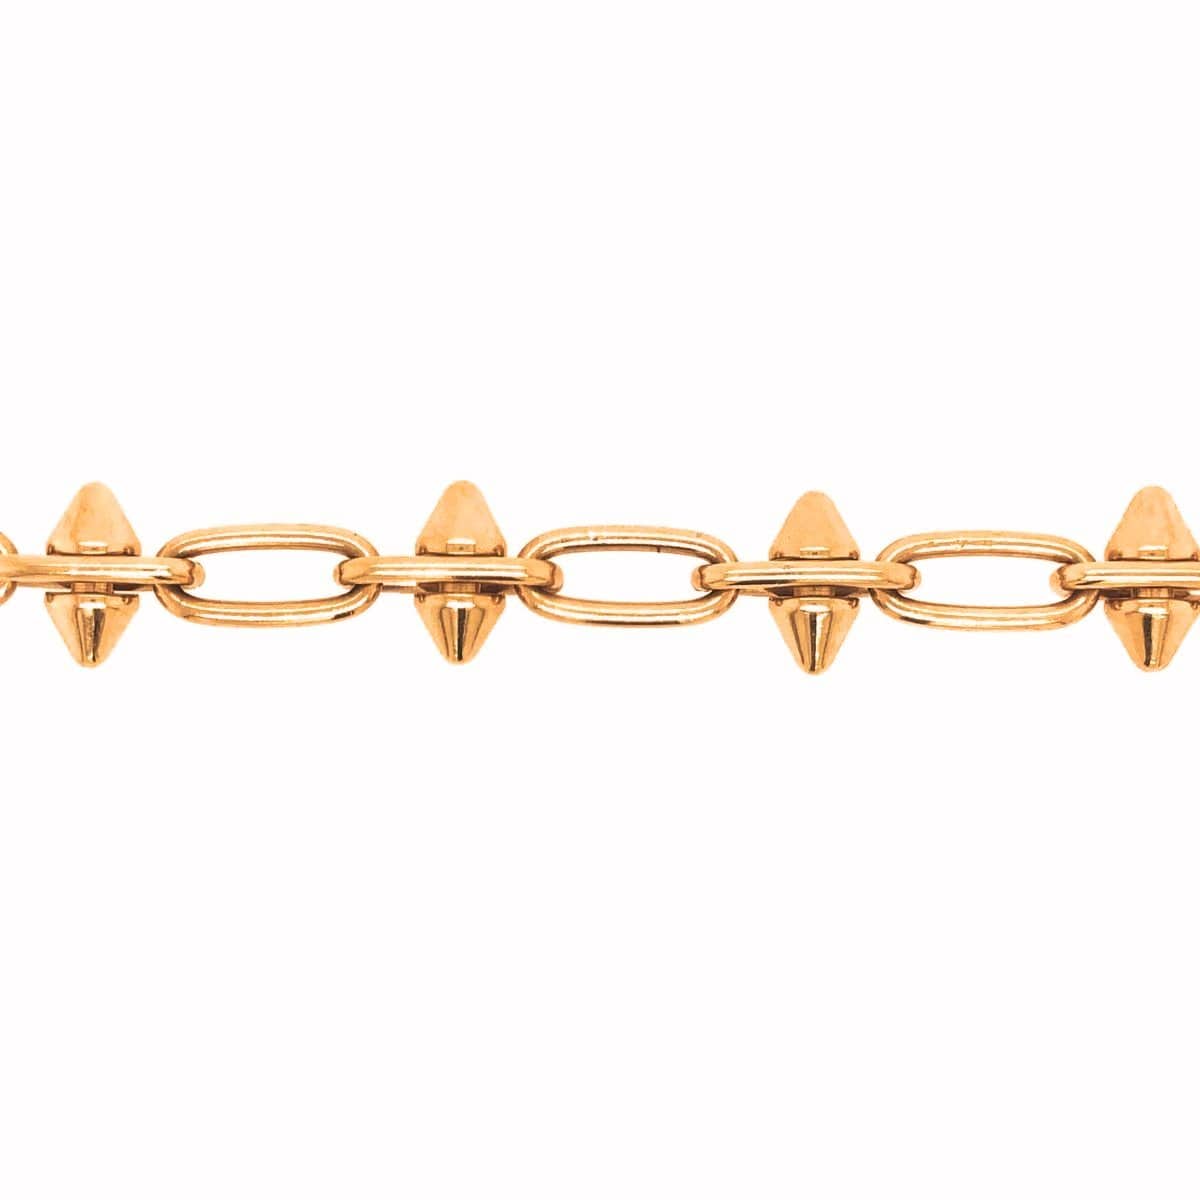 Yellow Gold Spike Bead Strech Bracelet - 91 metals